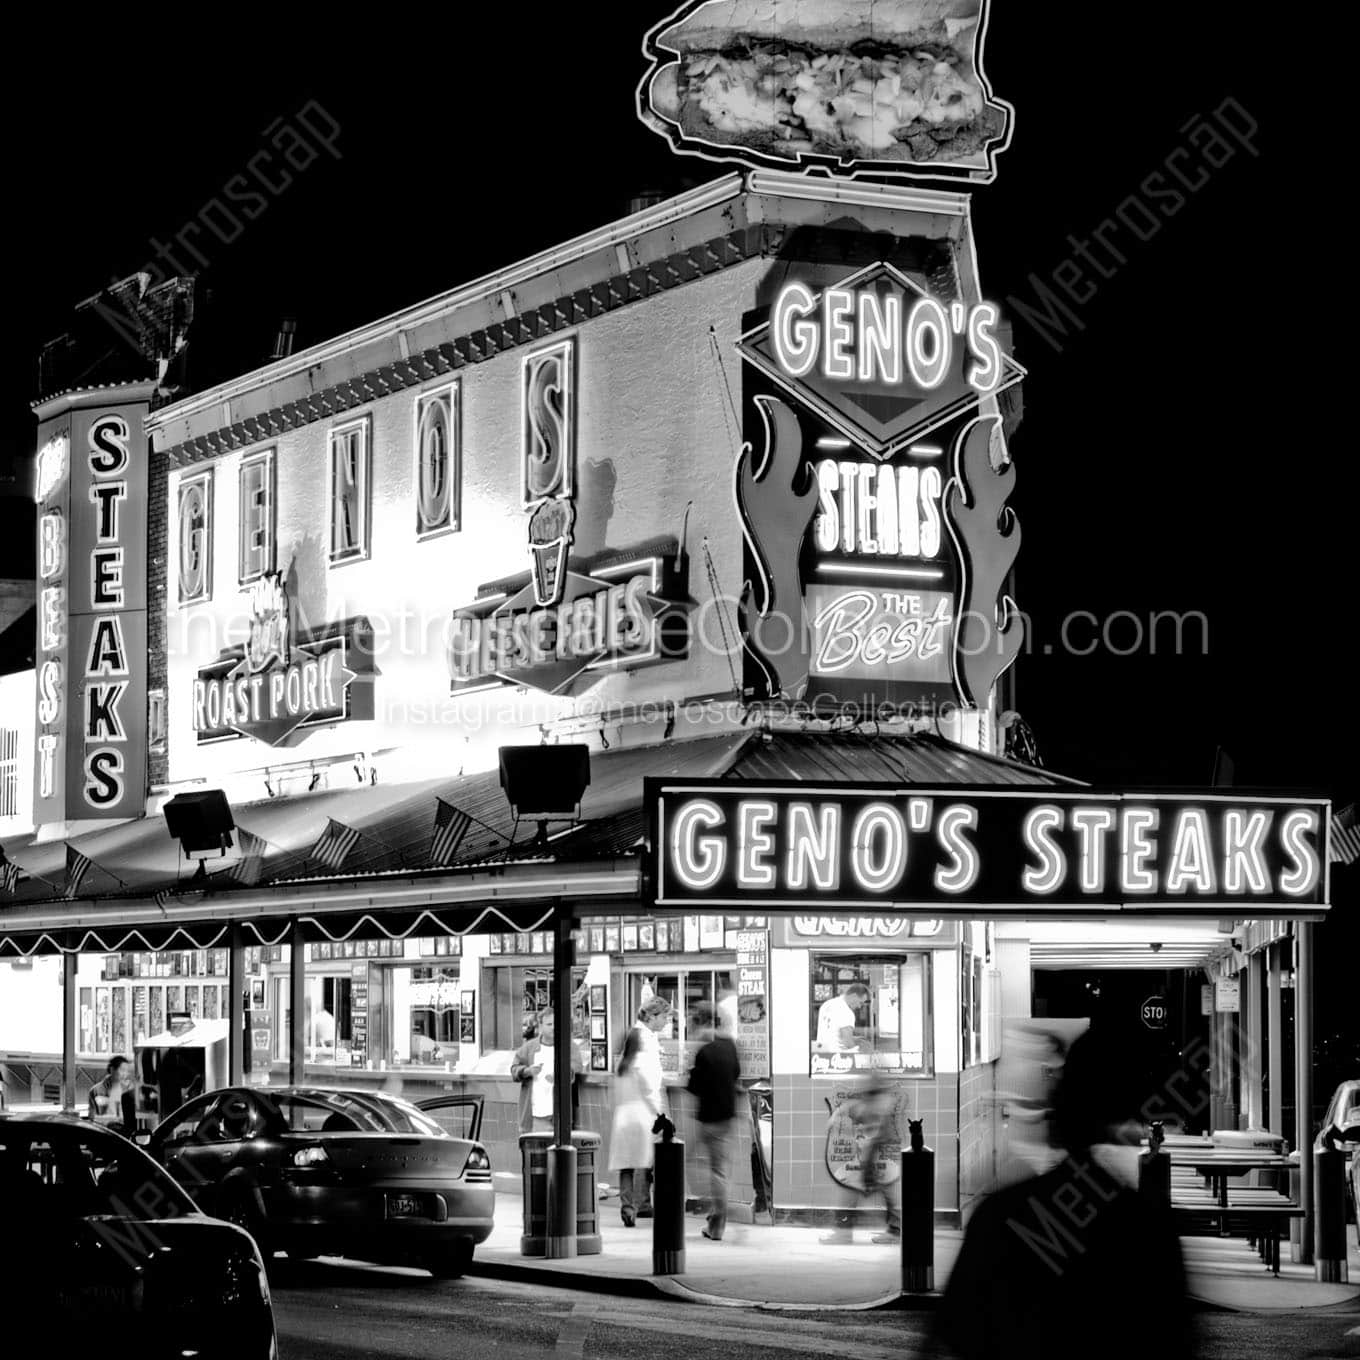 genos steaks at night Black & White Office Art